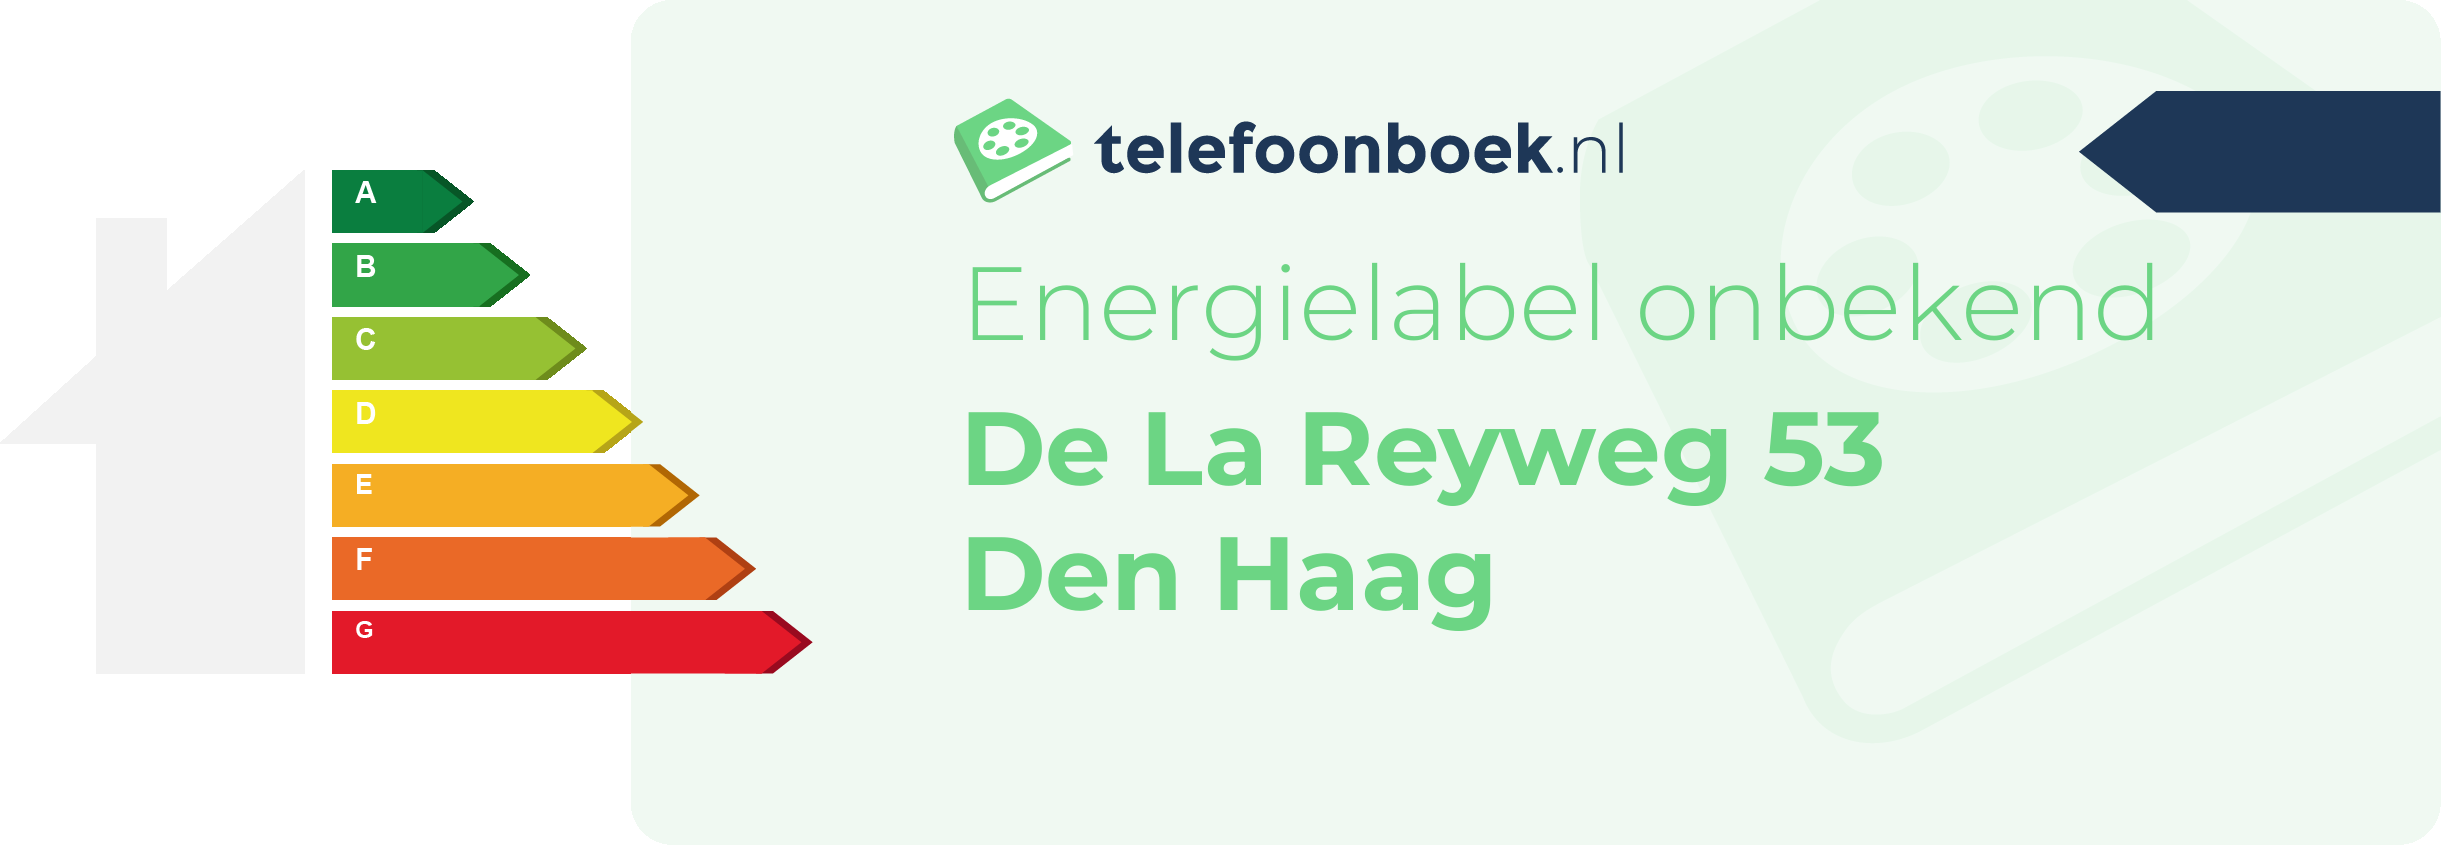 Energielabel De La Reyweg 53 Den Haag